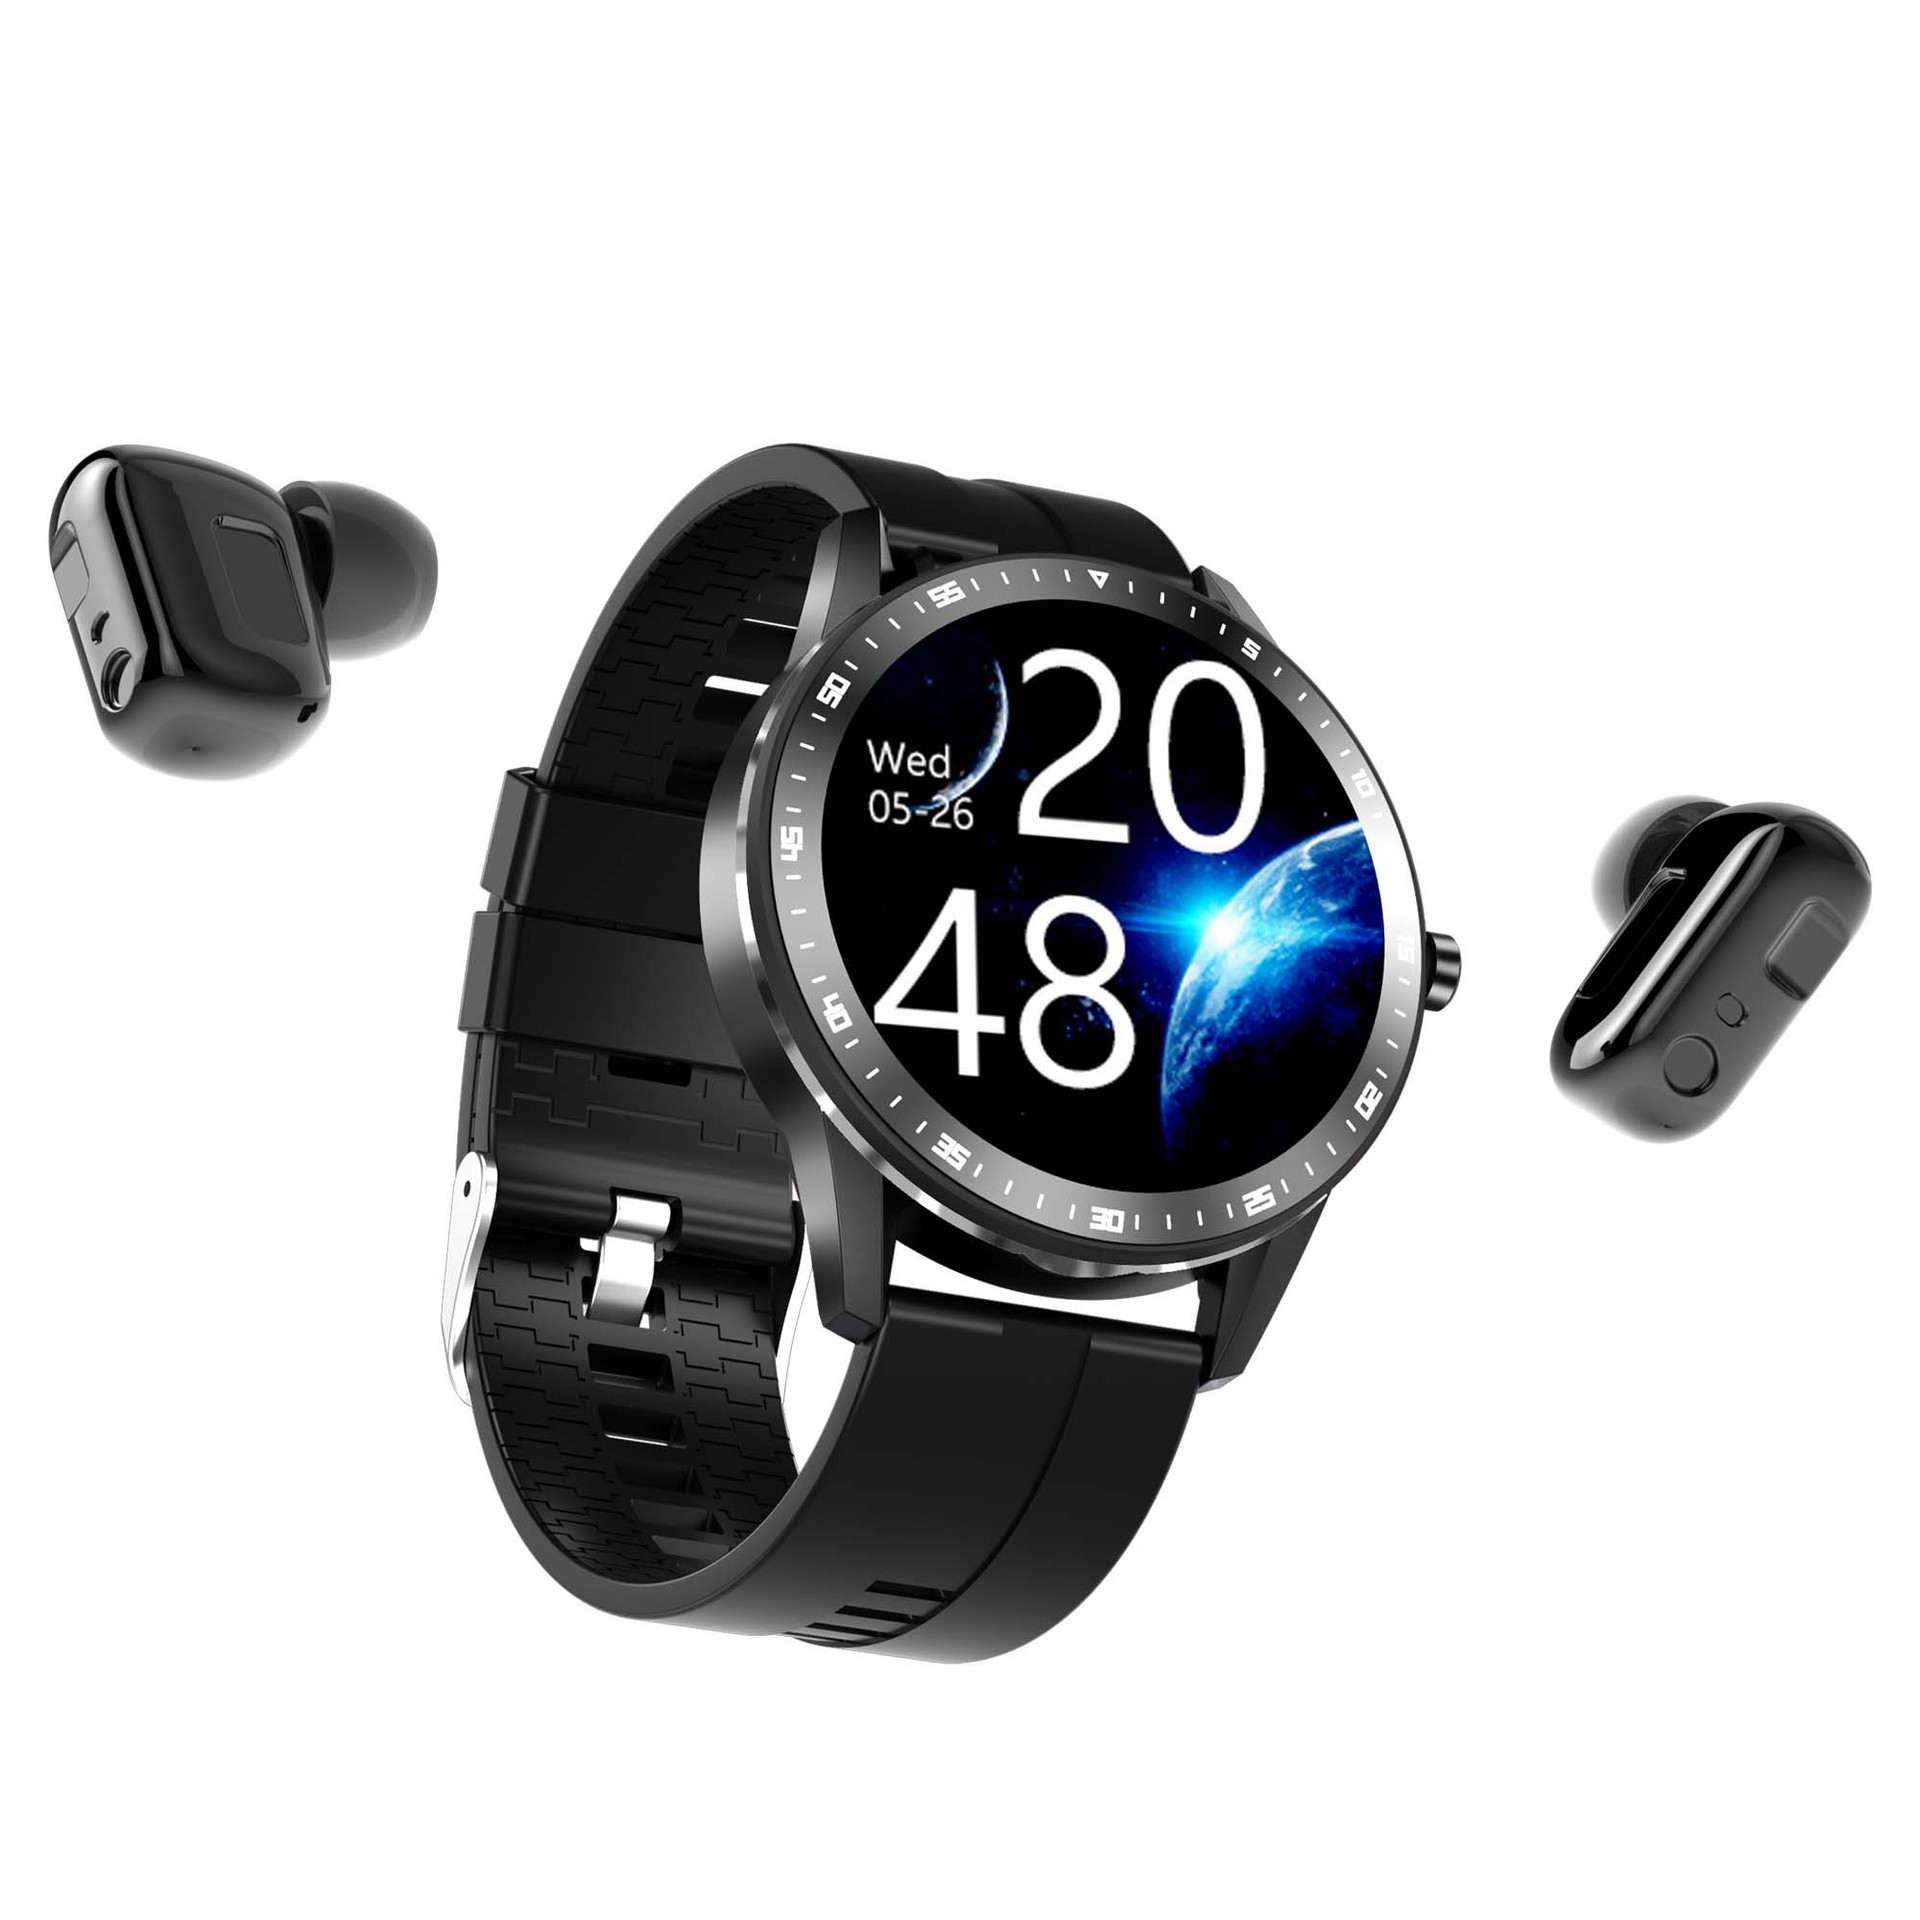 自带内存512M蓝牙耳机智能手环二合一心率监测运动触摸式手表X6|ru